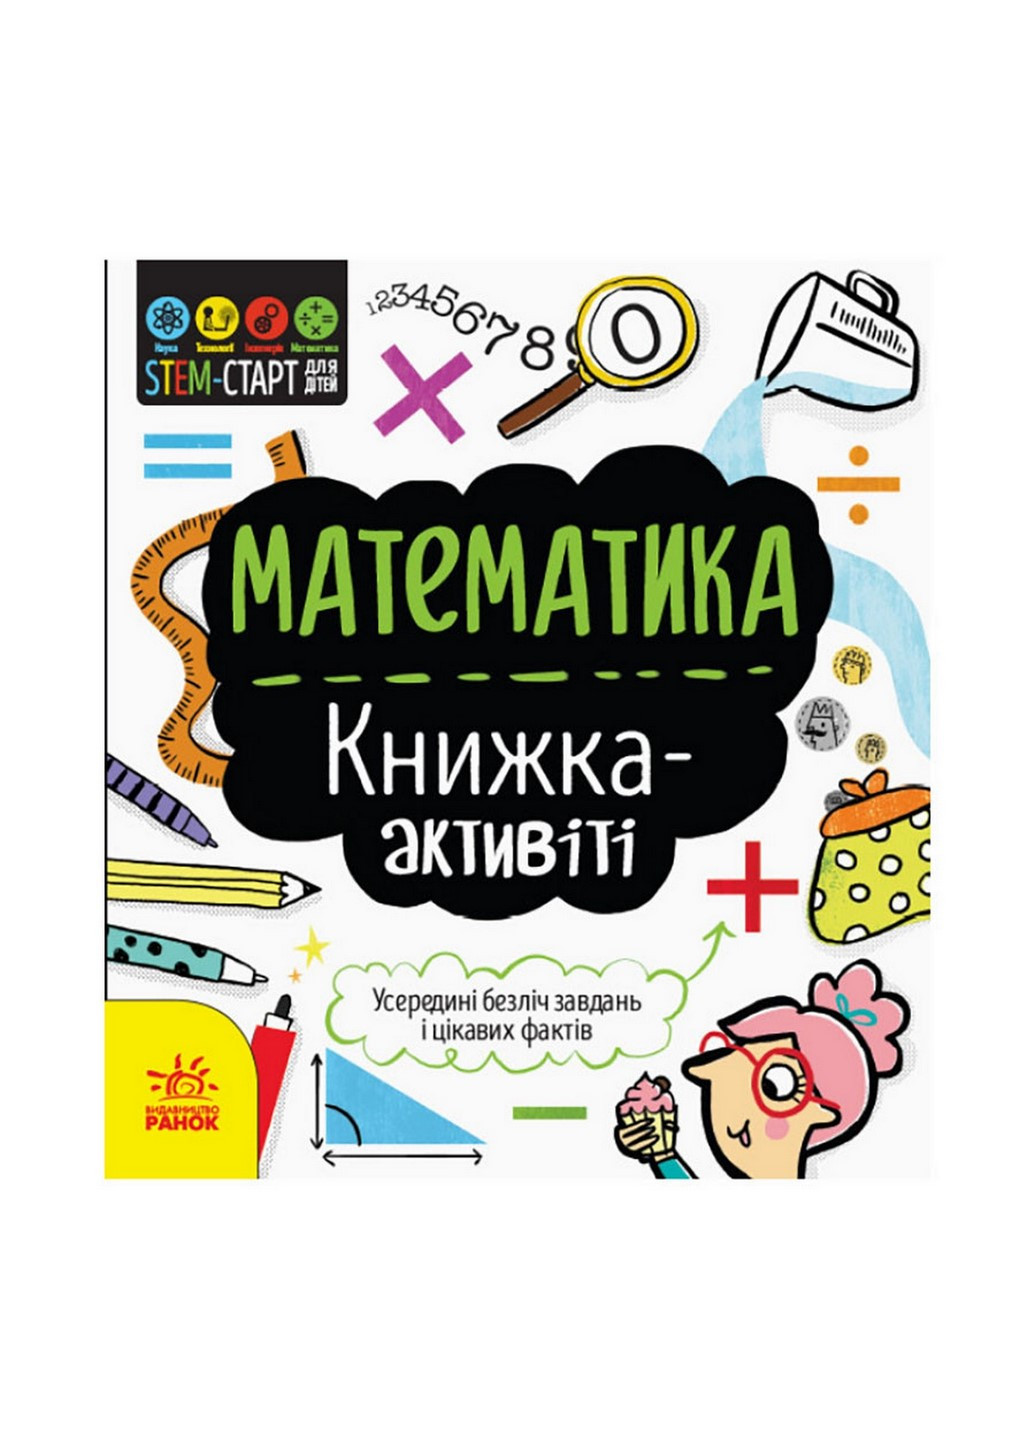 STEM-старт для дітей "Математика: книга-активіті" Ранок 1234005 українською мовою Ranok Creative (260515882)